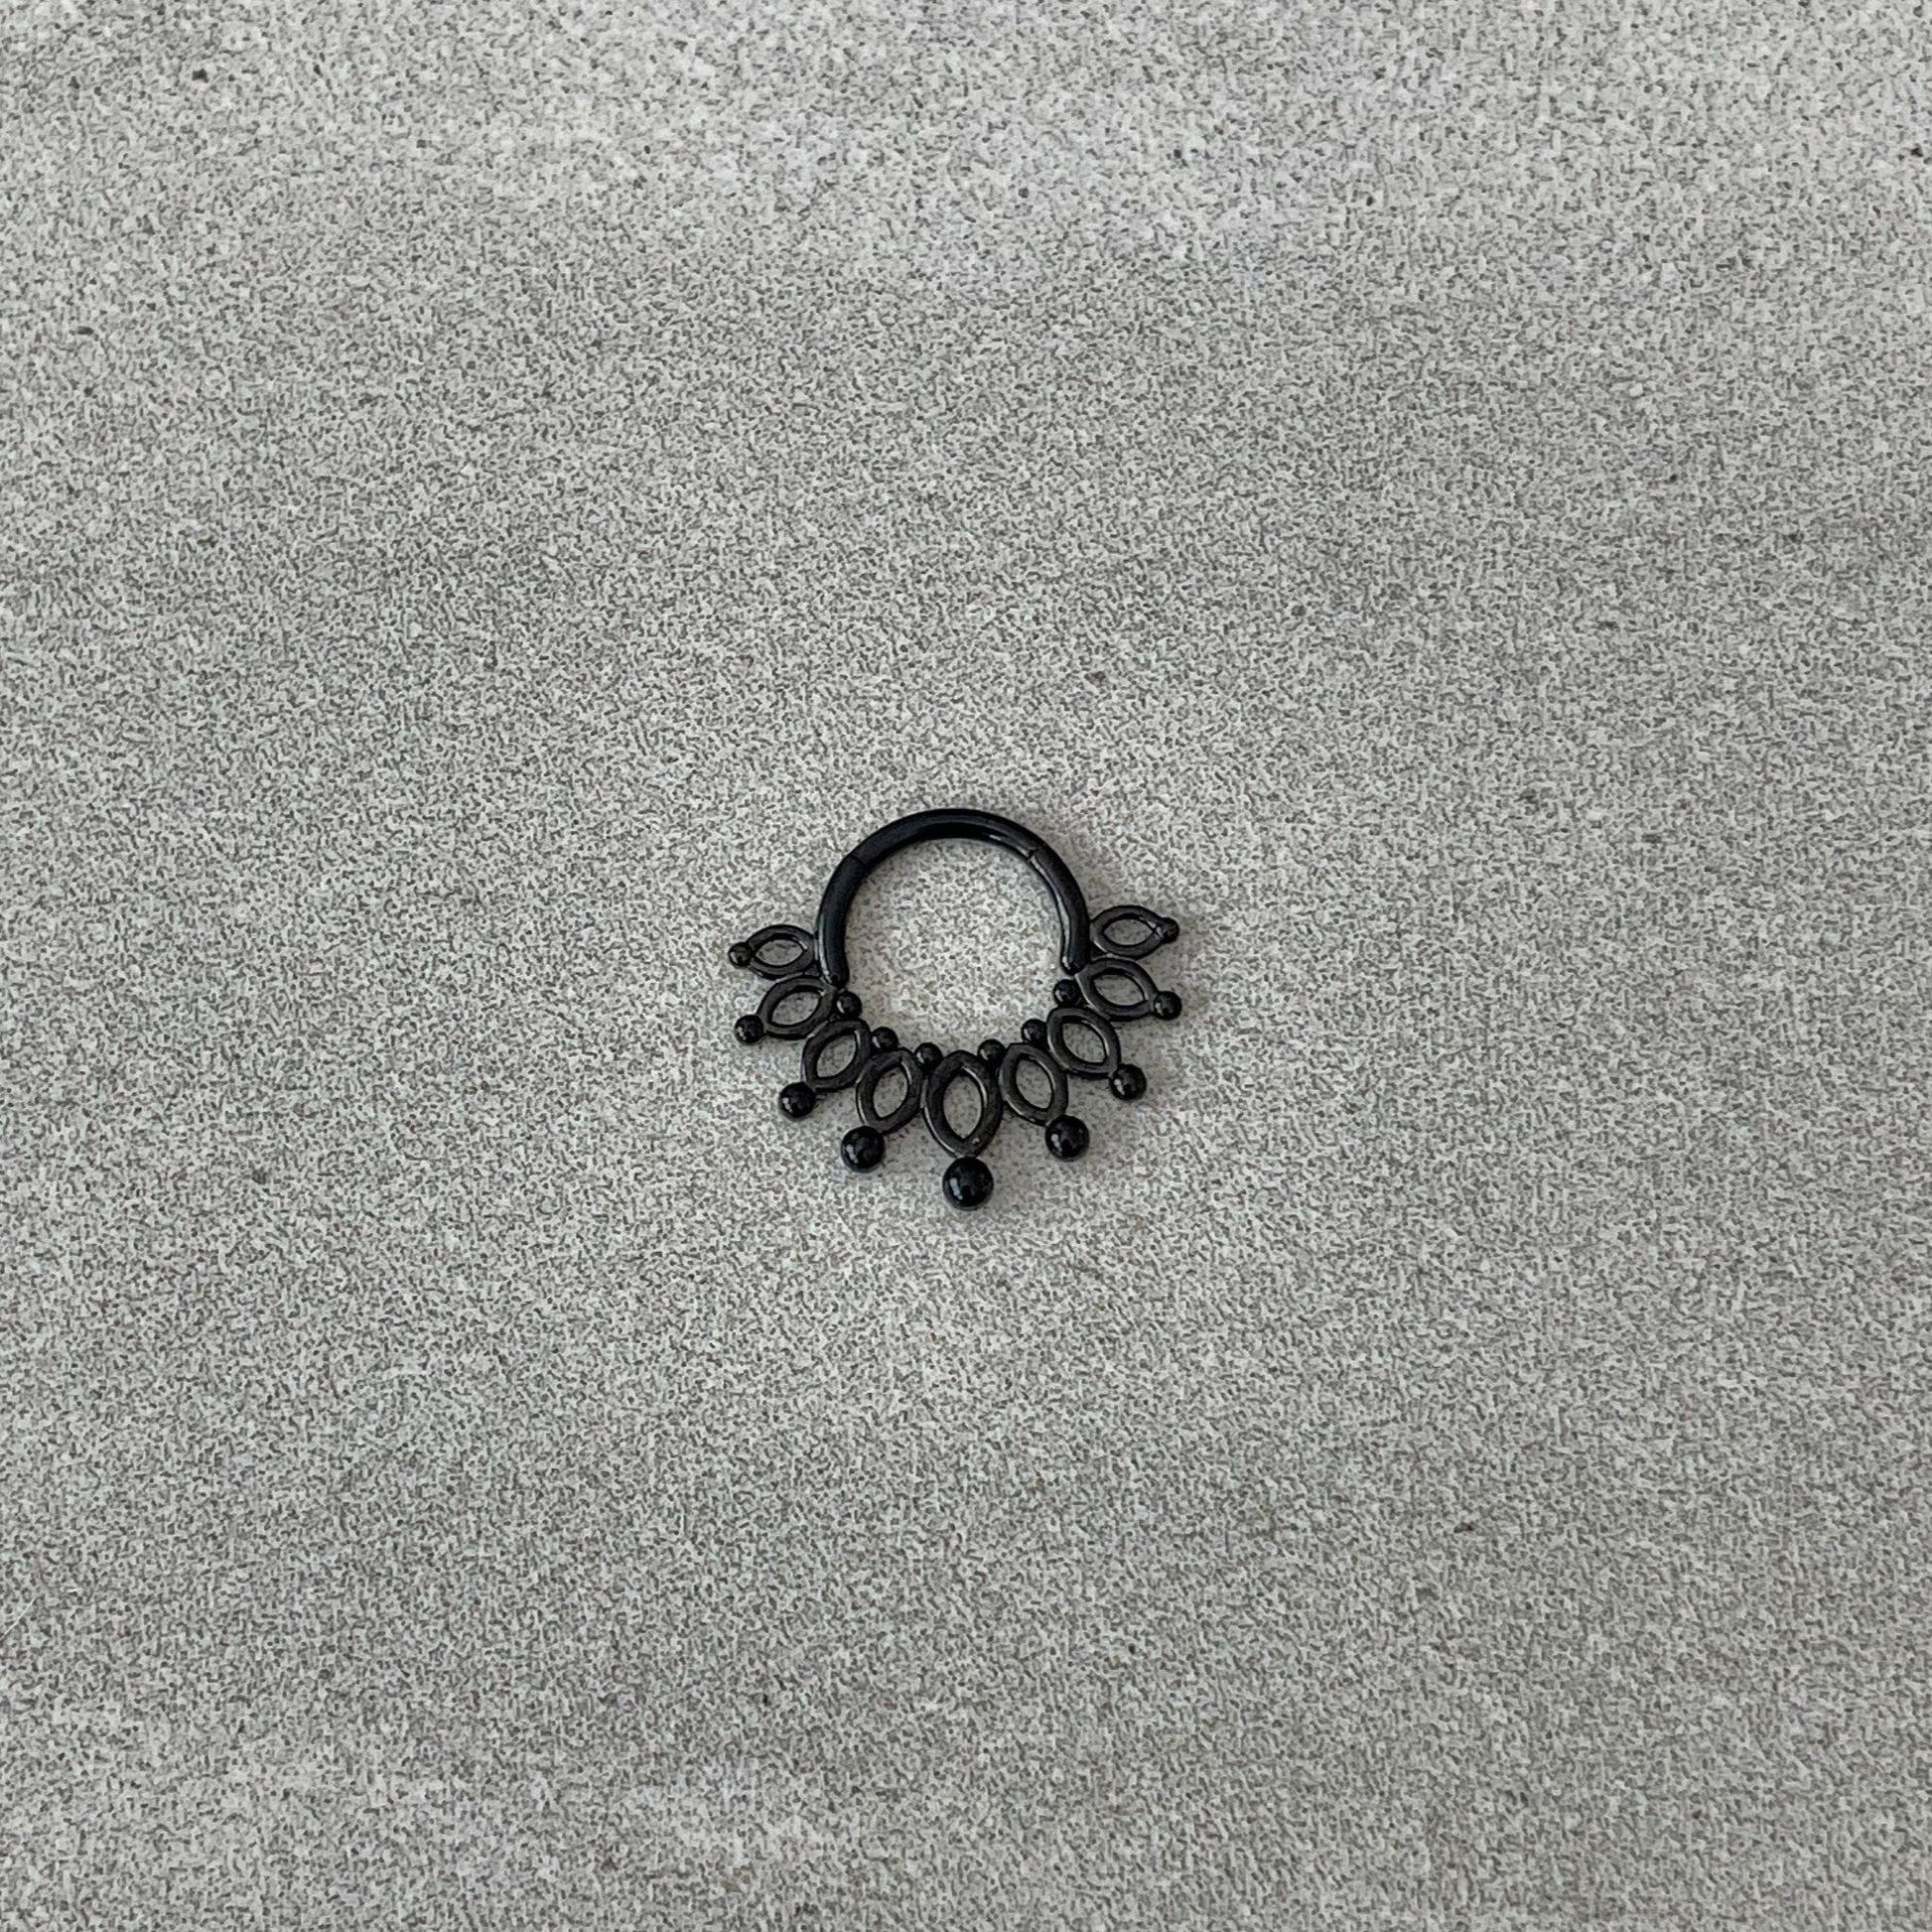 Black Fan Septum Piercing (16G | 8mm | Surgical Steel | Black, Gold, or Rose Gold)